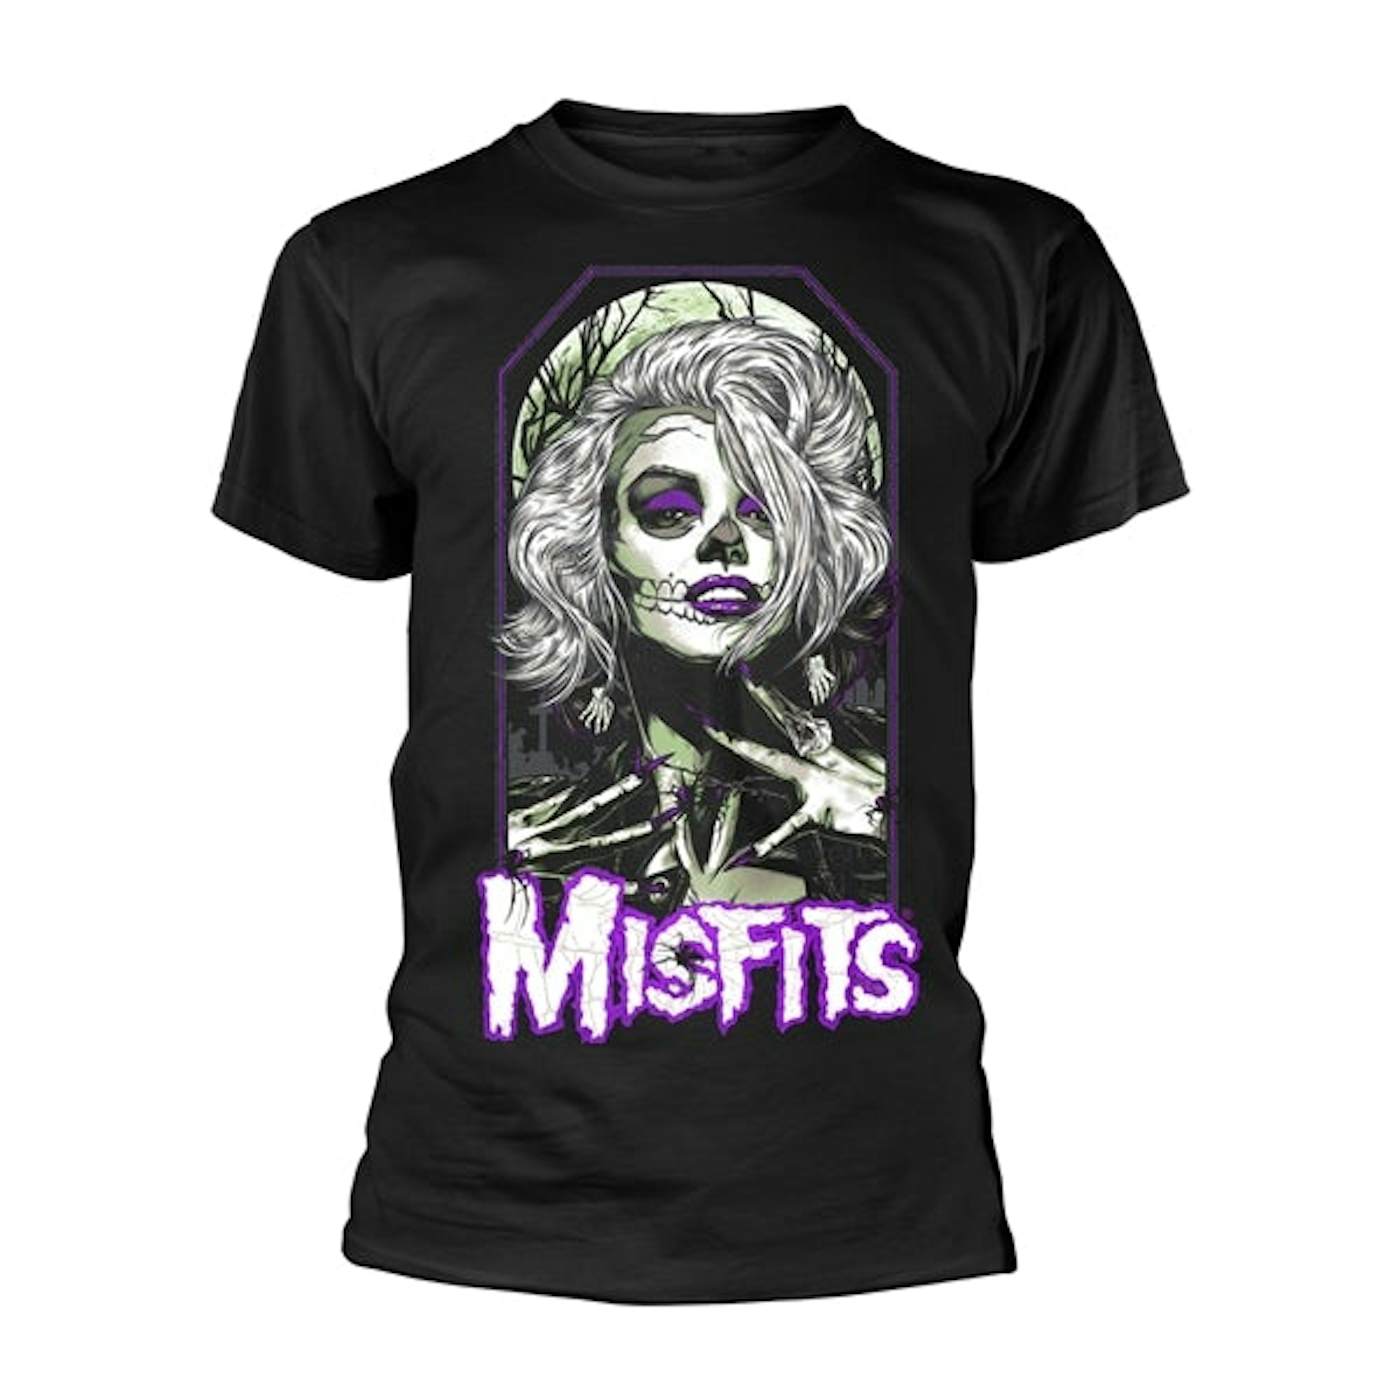 Misfits T-Shirt - Original Misfit